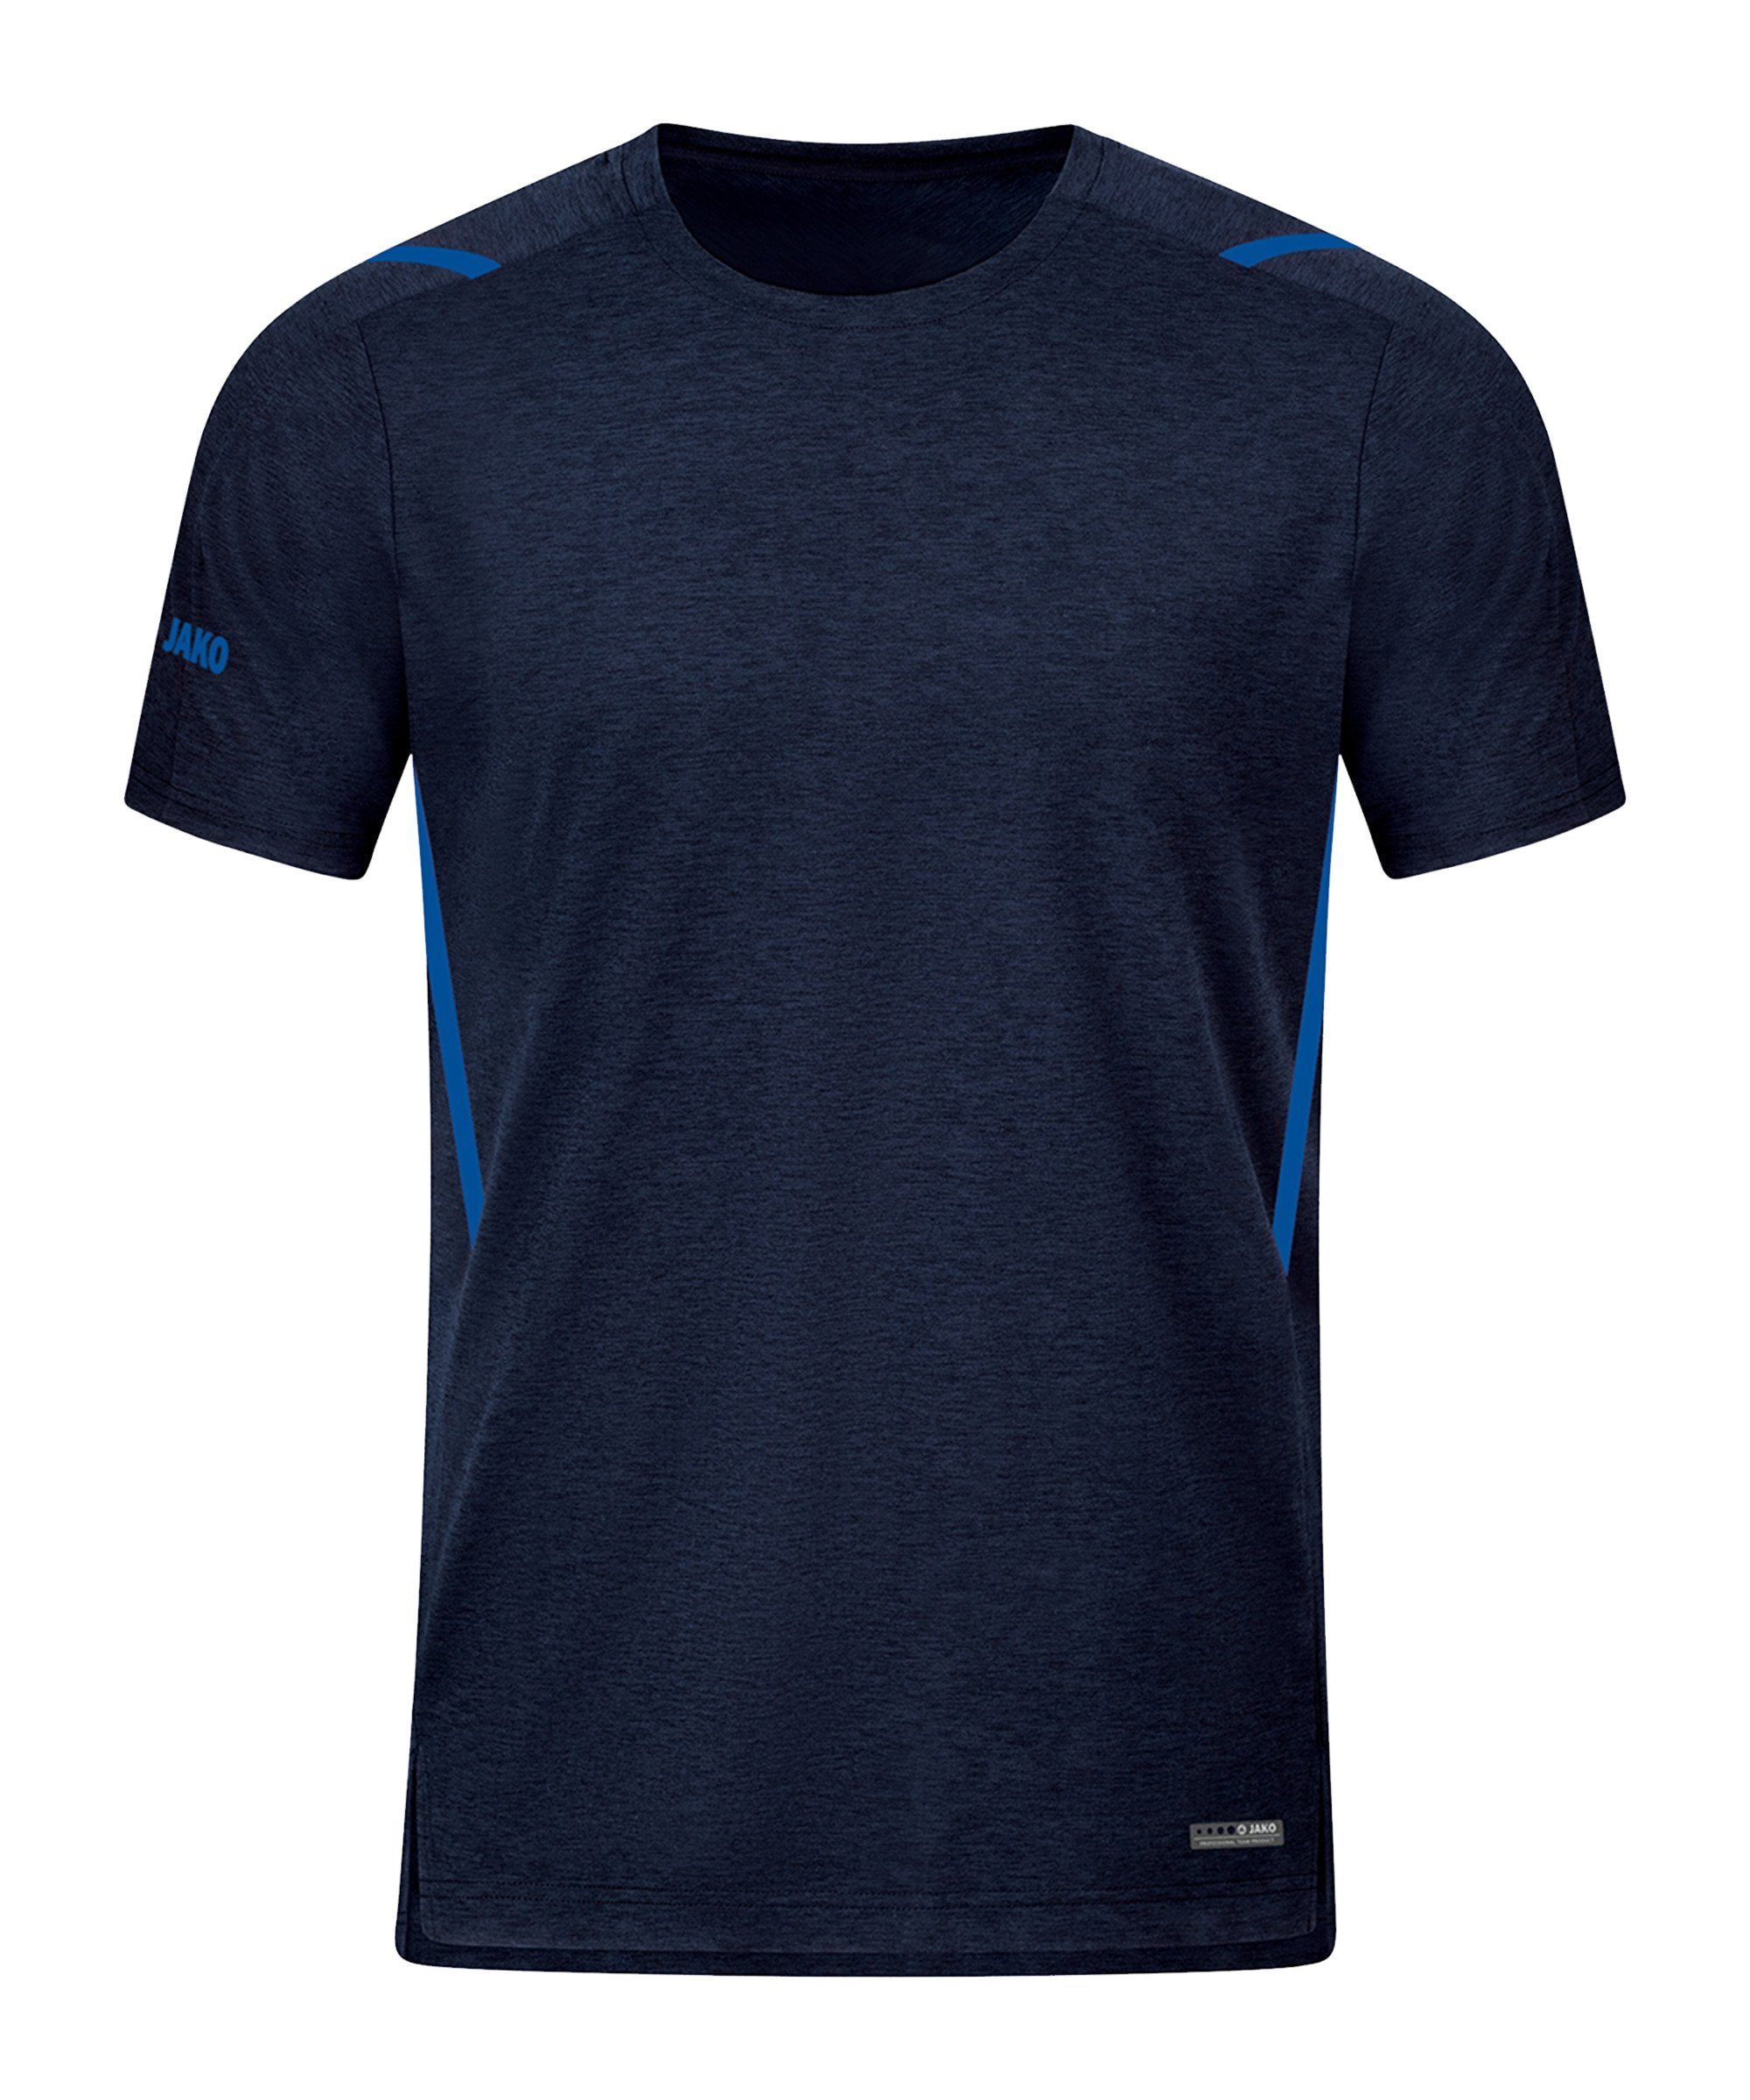 Freizeit Challenge T-Shirt Jako default blaublau T-Shirt